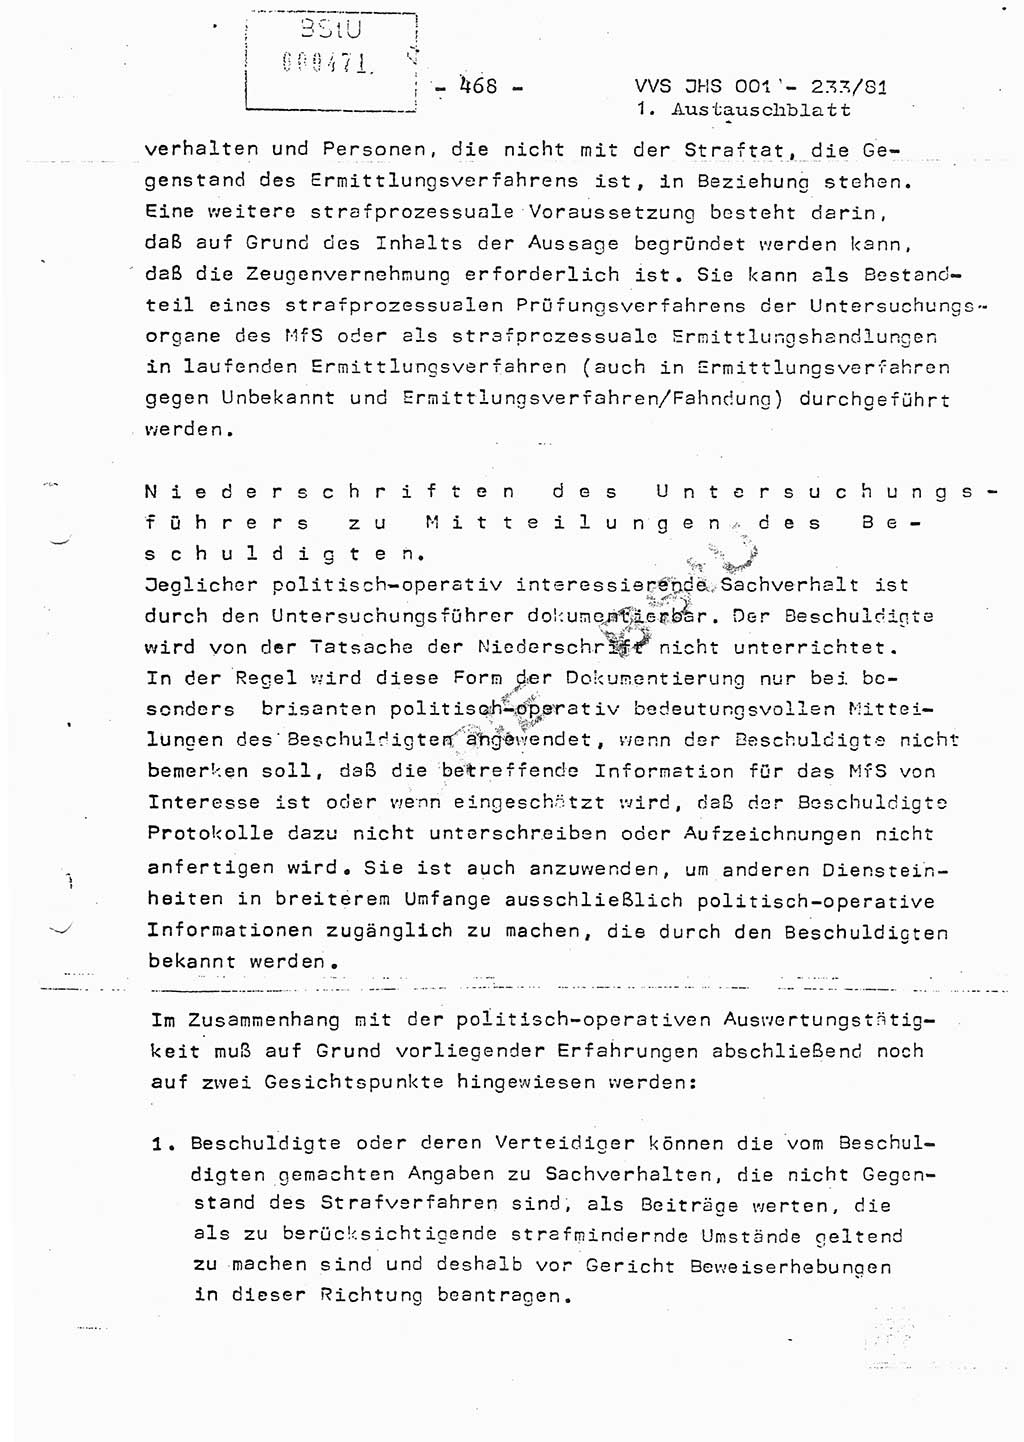 Dissertation Oberstleutnant Horst Zank (JHS), Oberstleutnant Dr. Karl-Heinz Knoblauch (JHS), Oberstleutnant Gustav-Adolf Kowalewski (HA Ⅸ), Oberstleutnant Wolfgang Plötner (HA Ⅸ), Ministerium für Staatssicherheit (MfS) [Deutsche Demokratische Republik (DDR)], Juristische Hochschule (JHS), Vertrauliche Verschlußsache (VVS) o001-233/81, Potsdam 1981, Blatt 468 (Diss. MfS DDR JHS VVS o001-233/81 1981, Bl. 468)